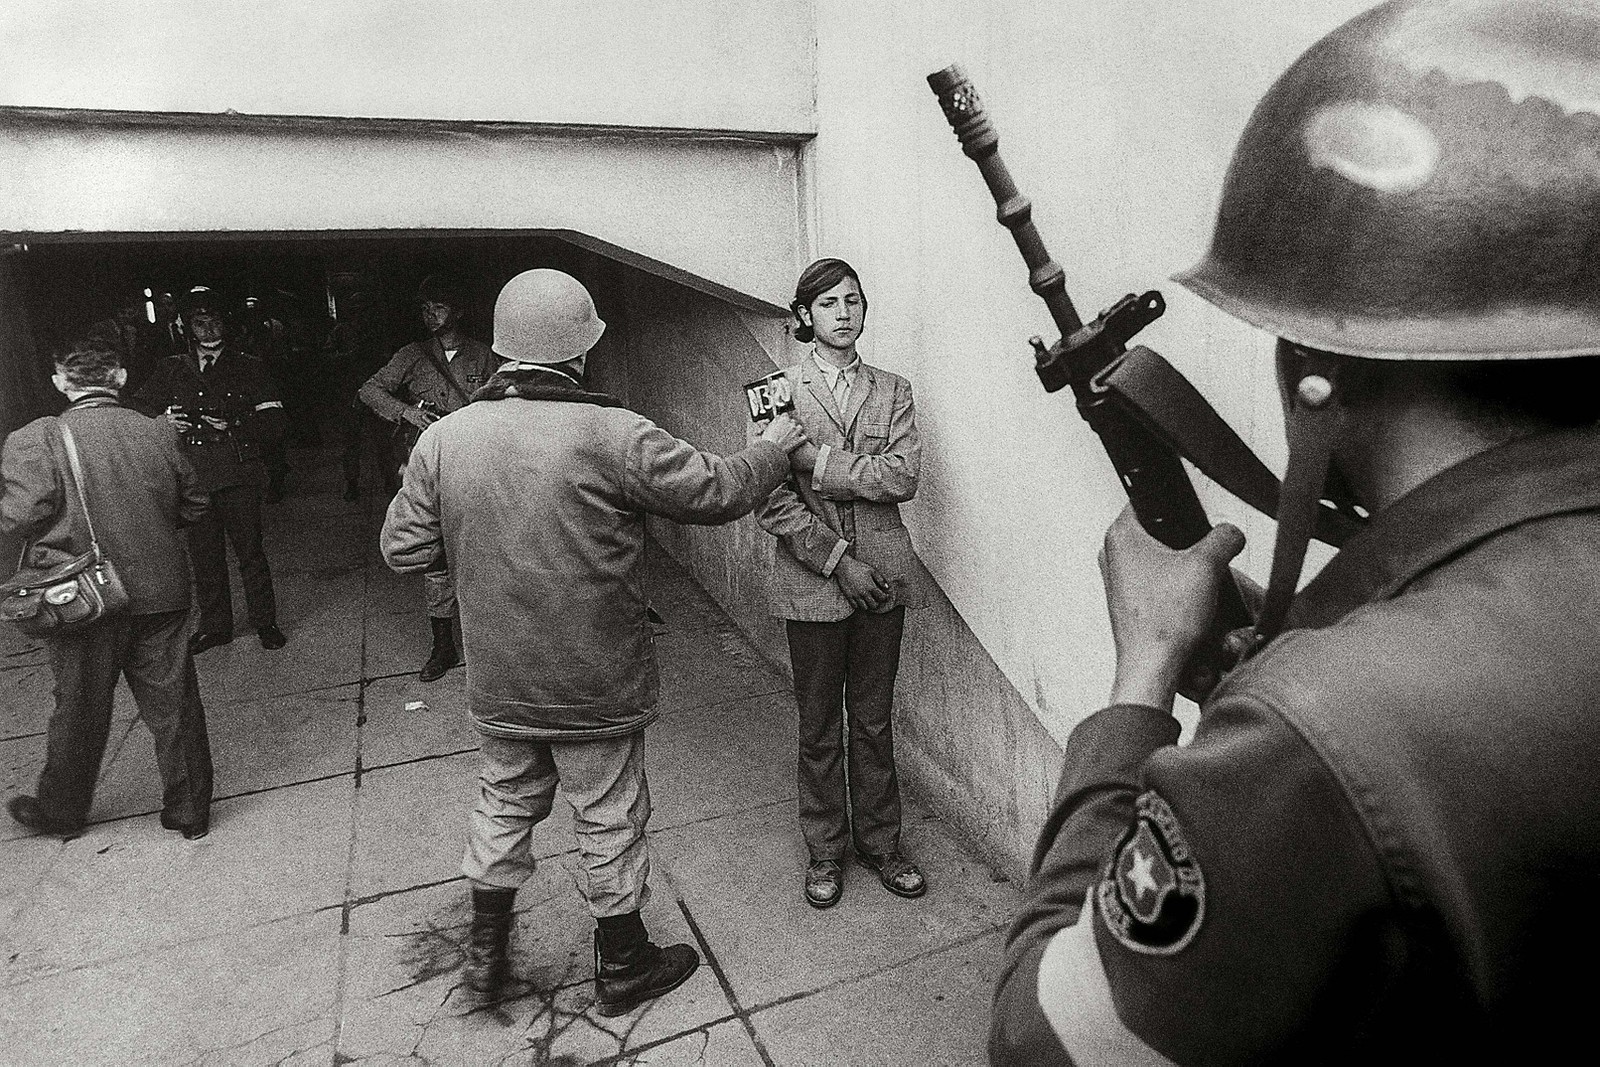 Jovem preso no Estádio Nacional (Santiago, Chile) sendo identificado e fotografado por militares em setembro de 1973 — Foto: Evandro Teixeira/Acervo IMS